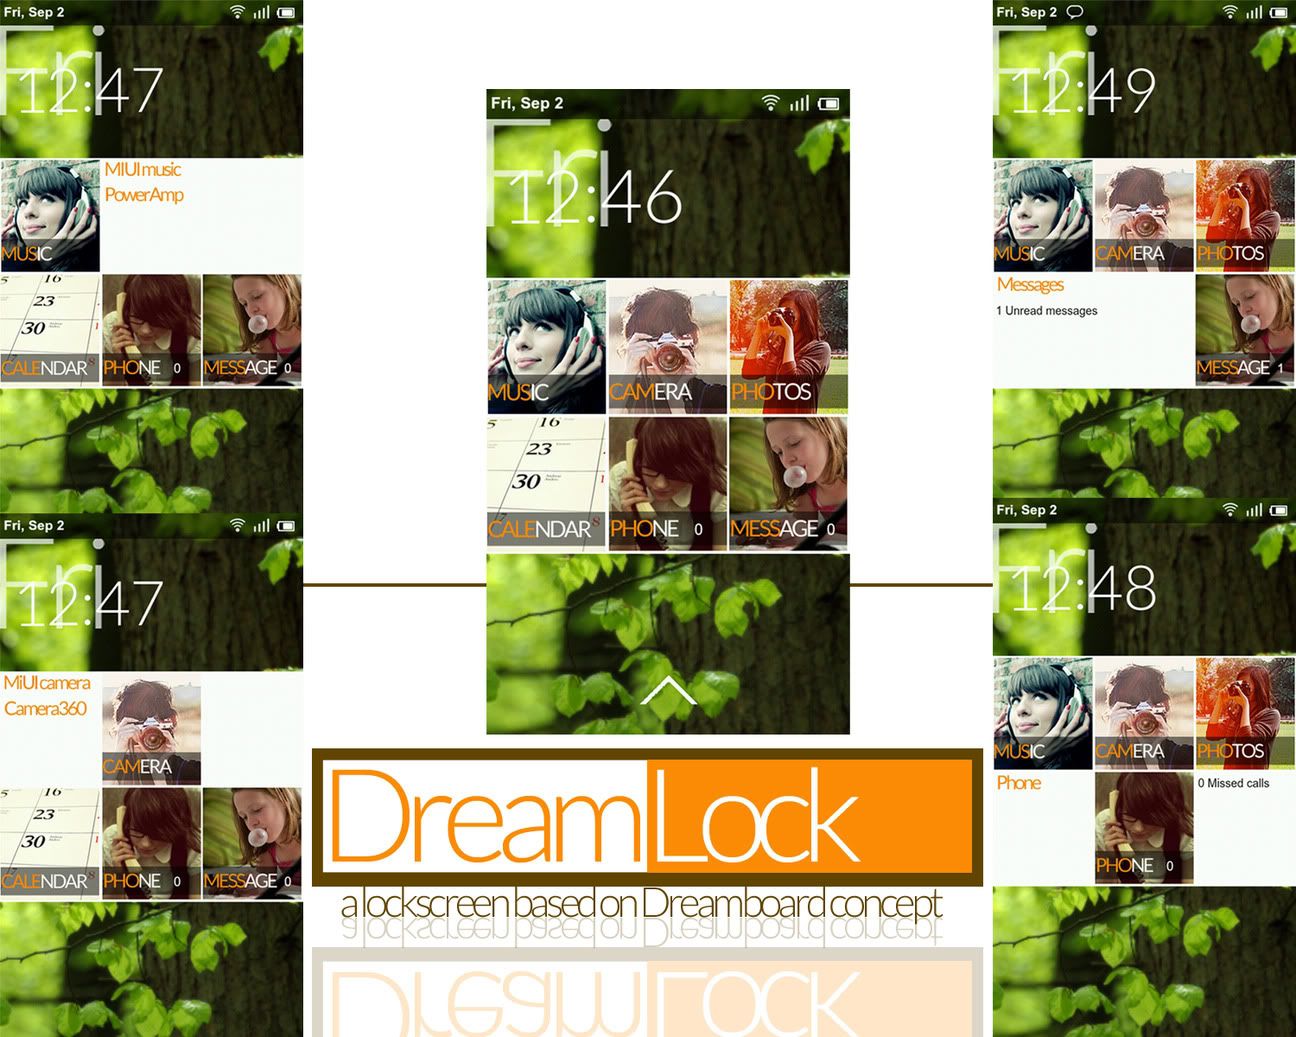 dreamlockpromo.jpg